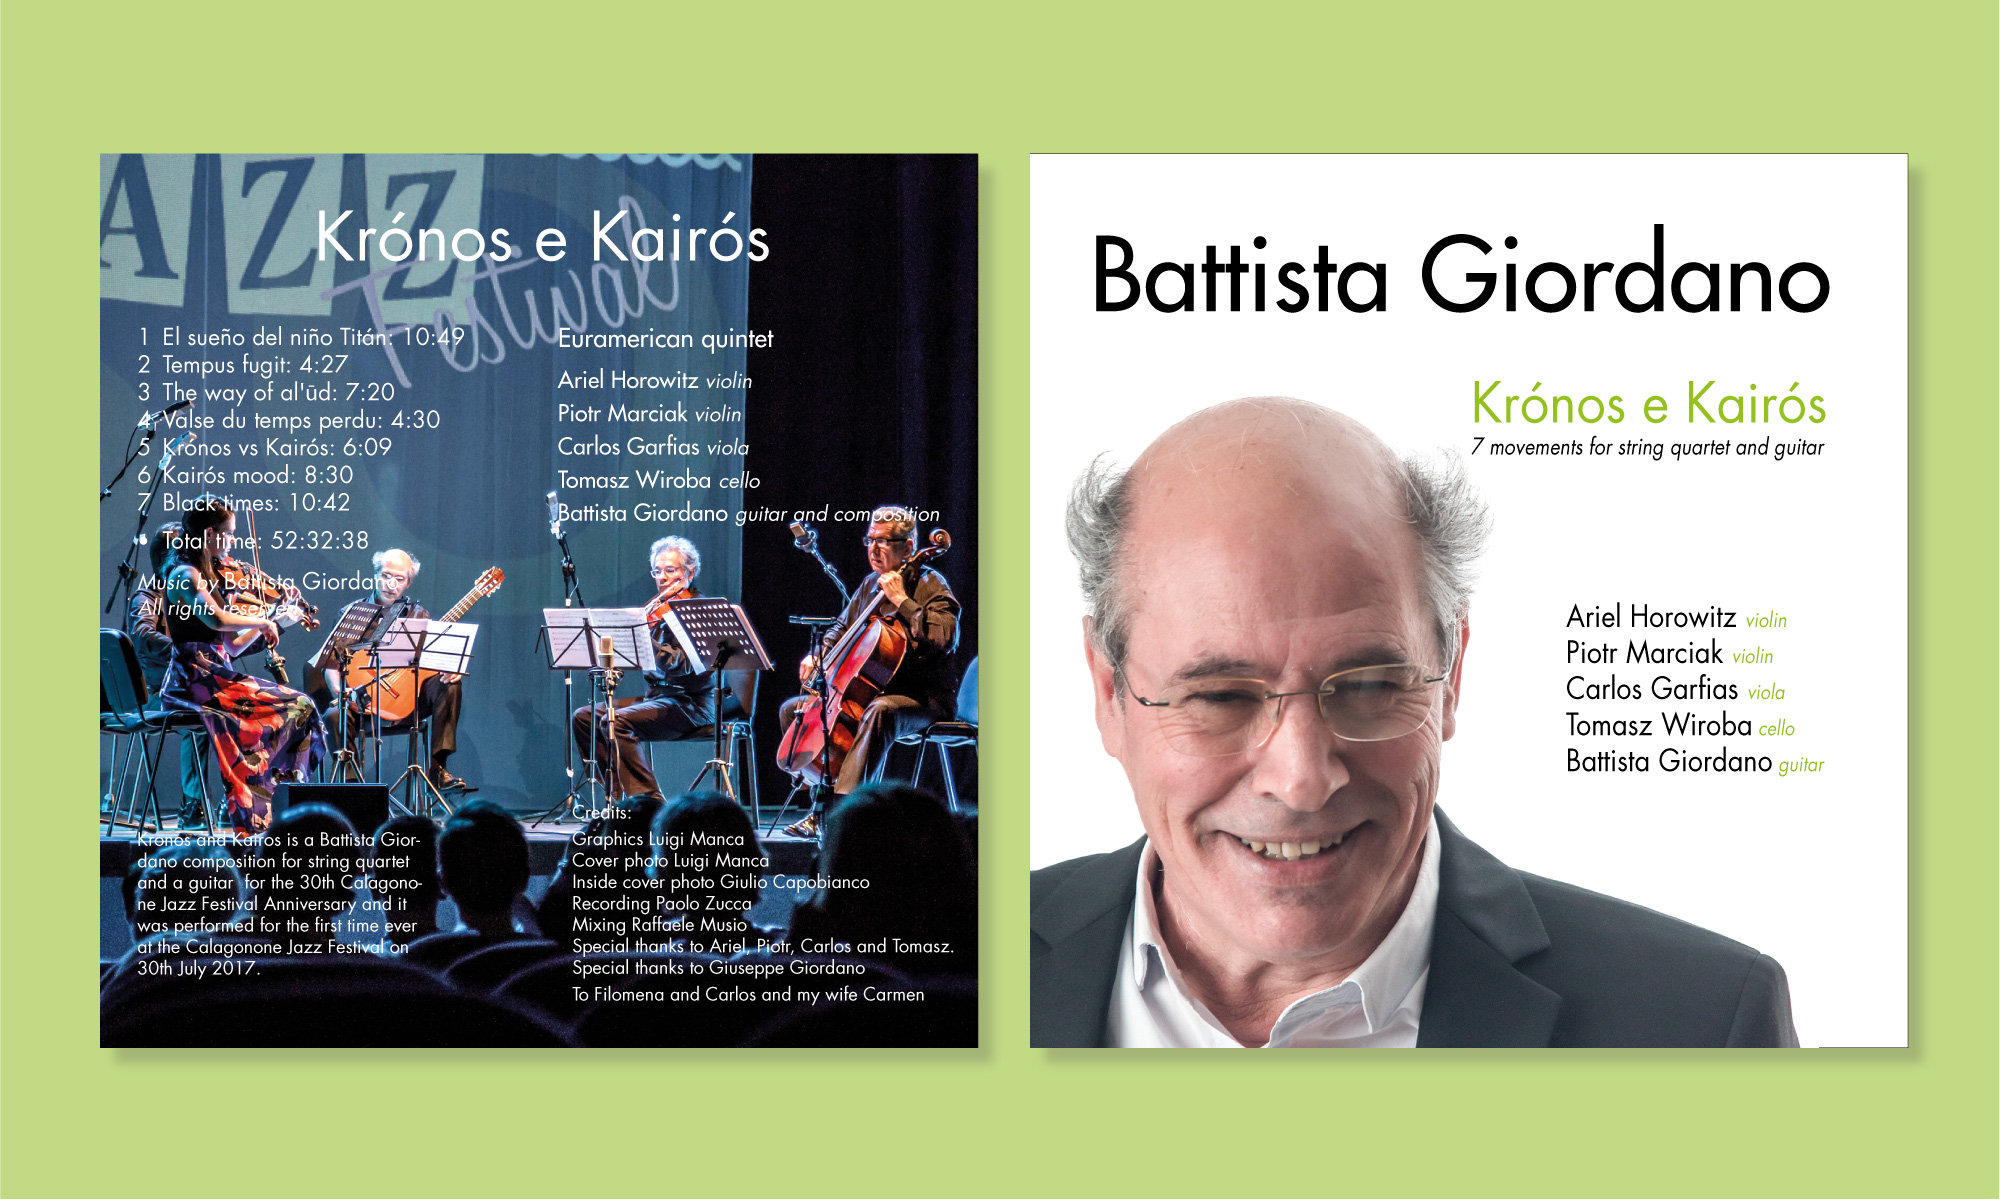 Studio grafico e fotografia per il CD musicale Kronos e Kairos di Battista Giordano